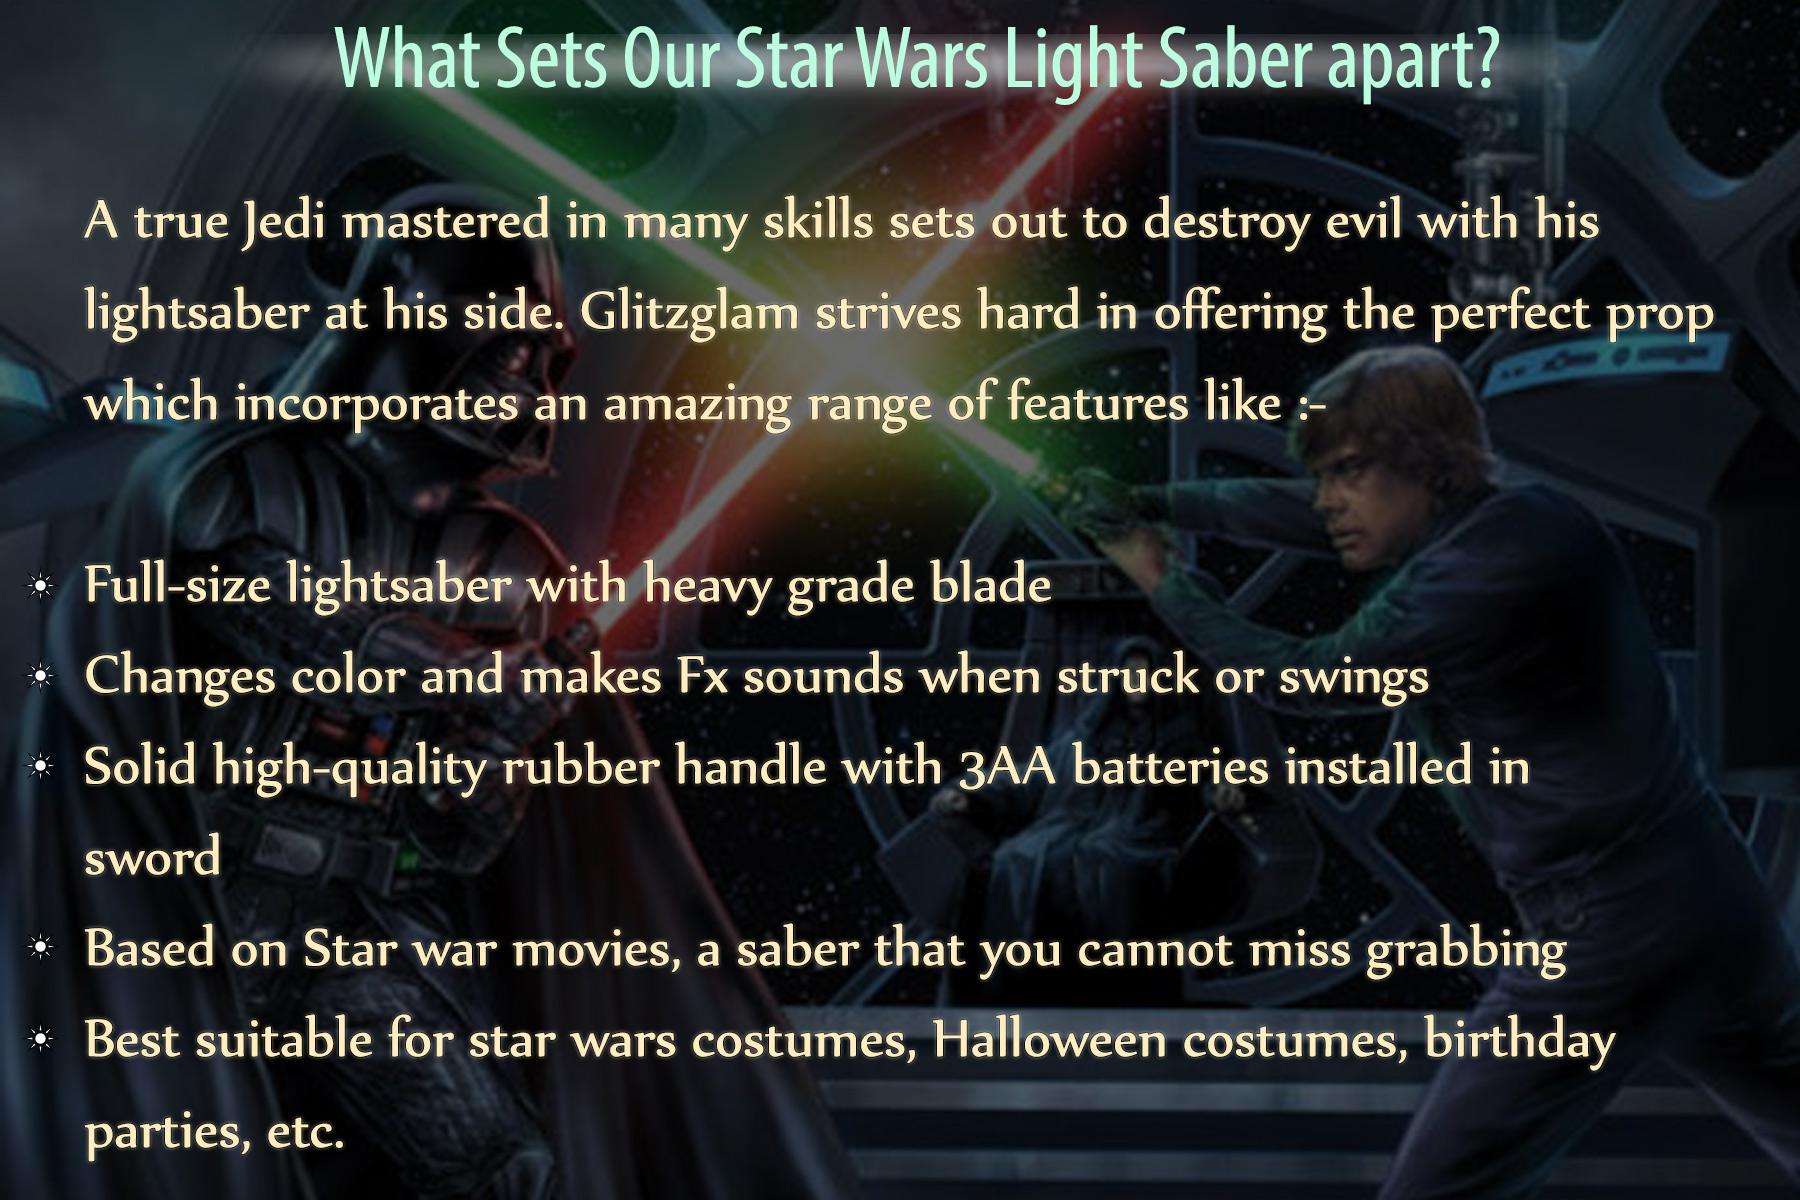 Star Wars Light Saber